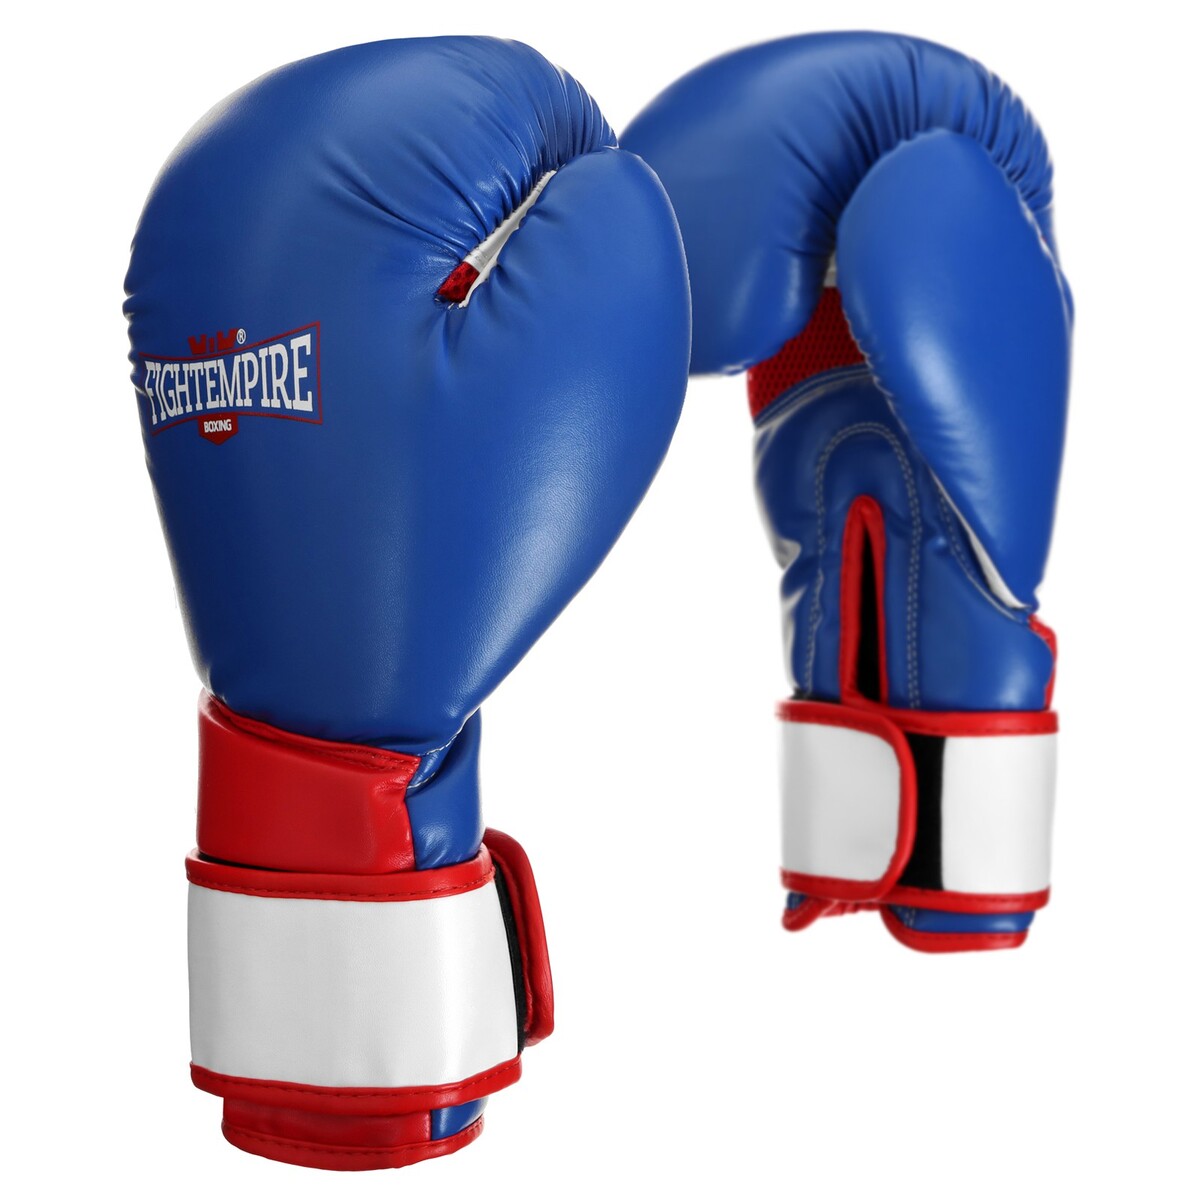 Перчатки боксерские fight empire, elite, синие, размер 8 oz